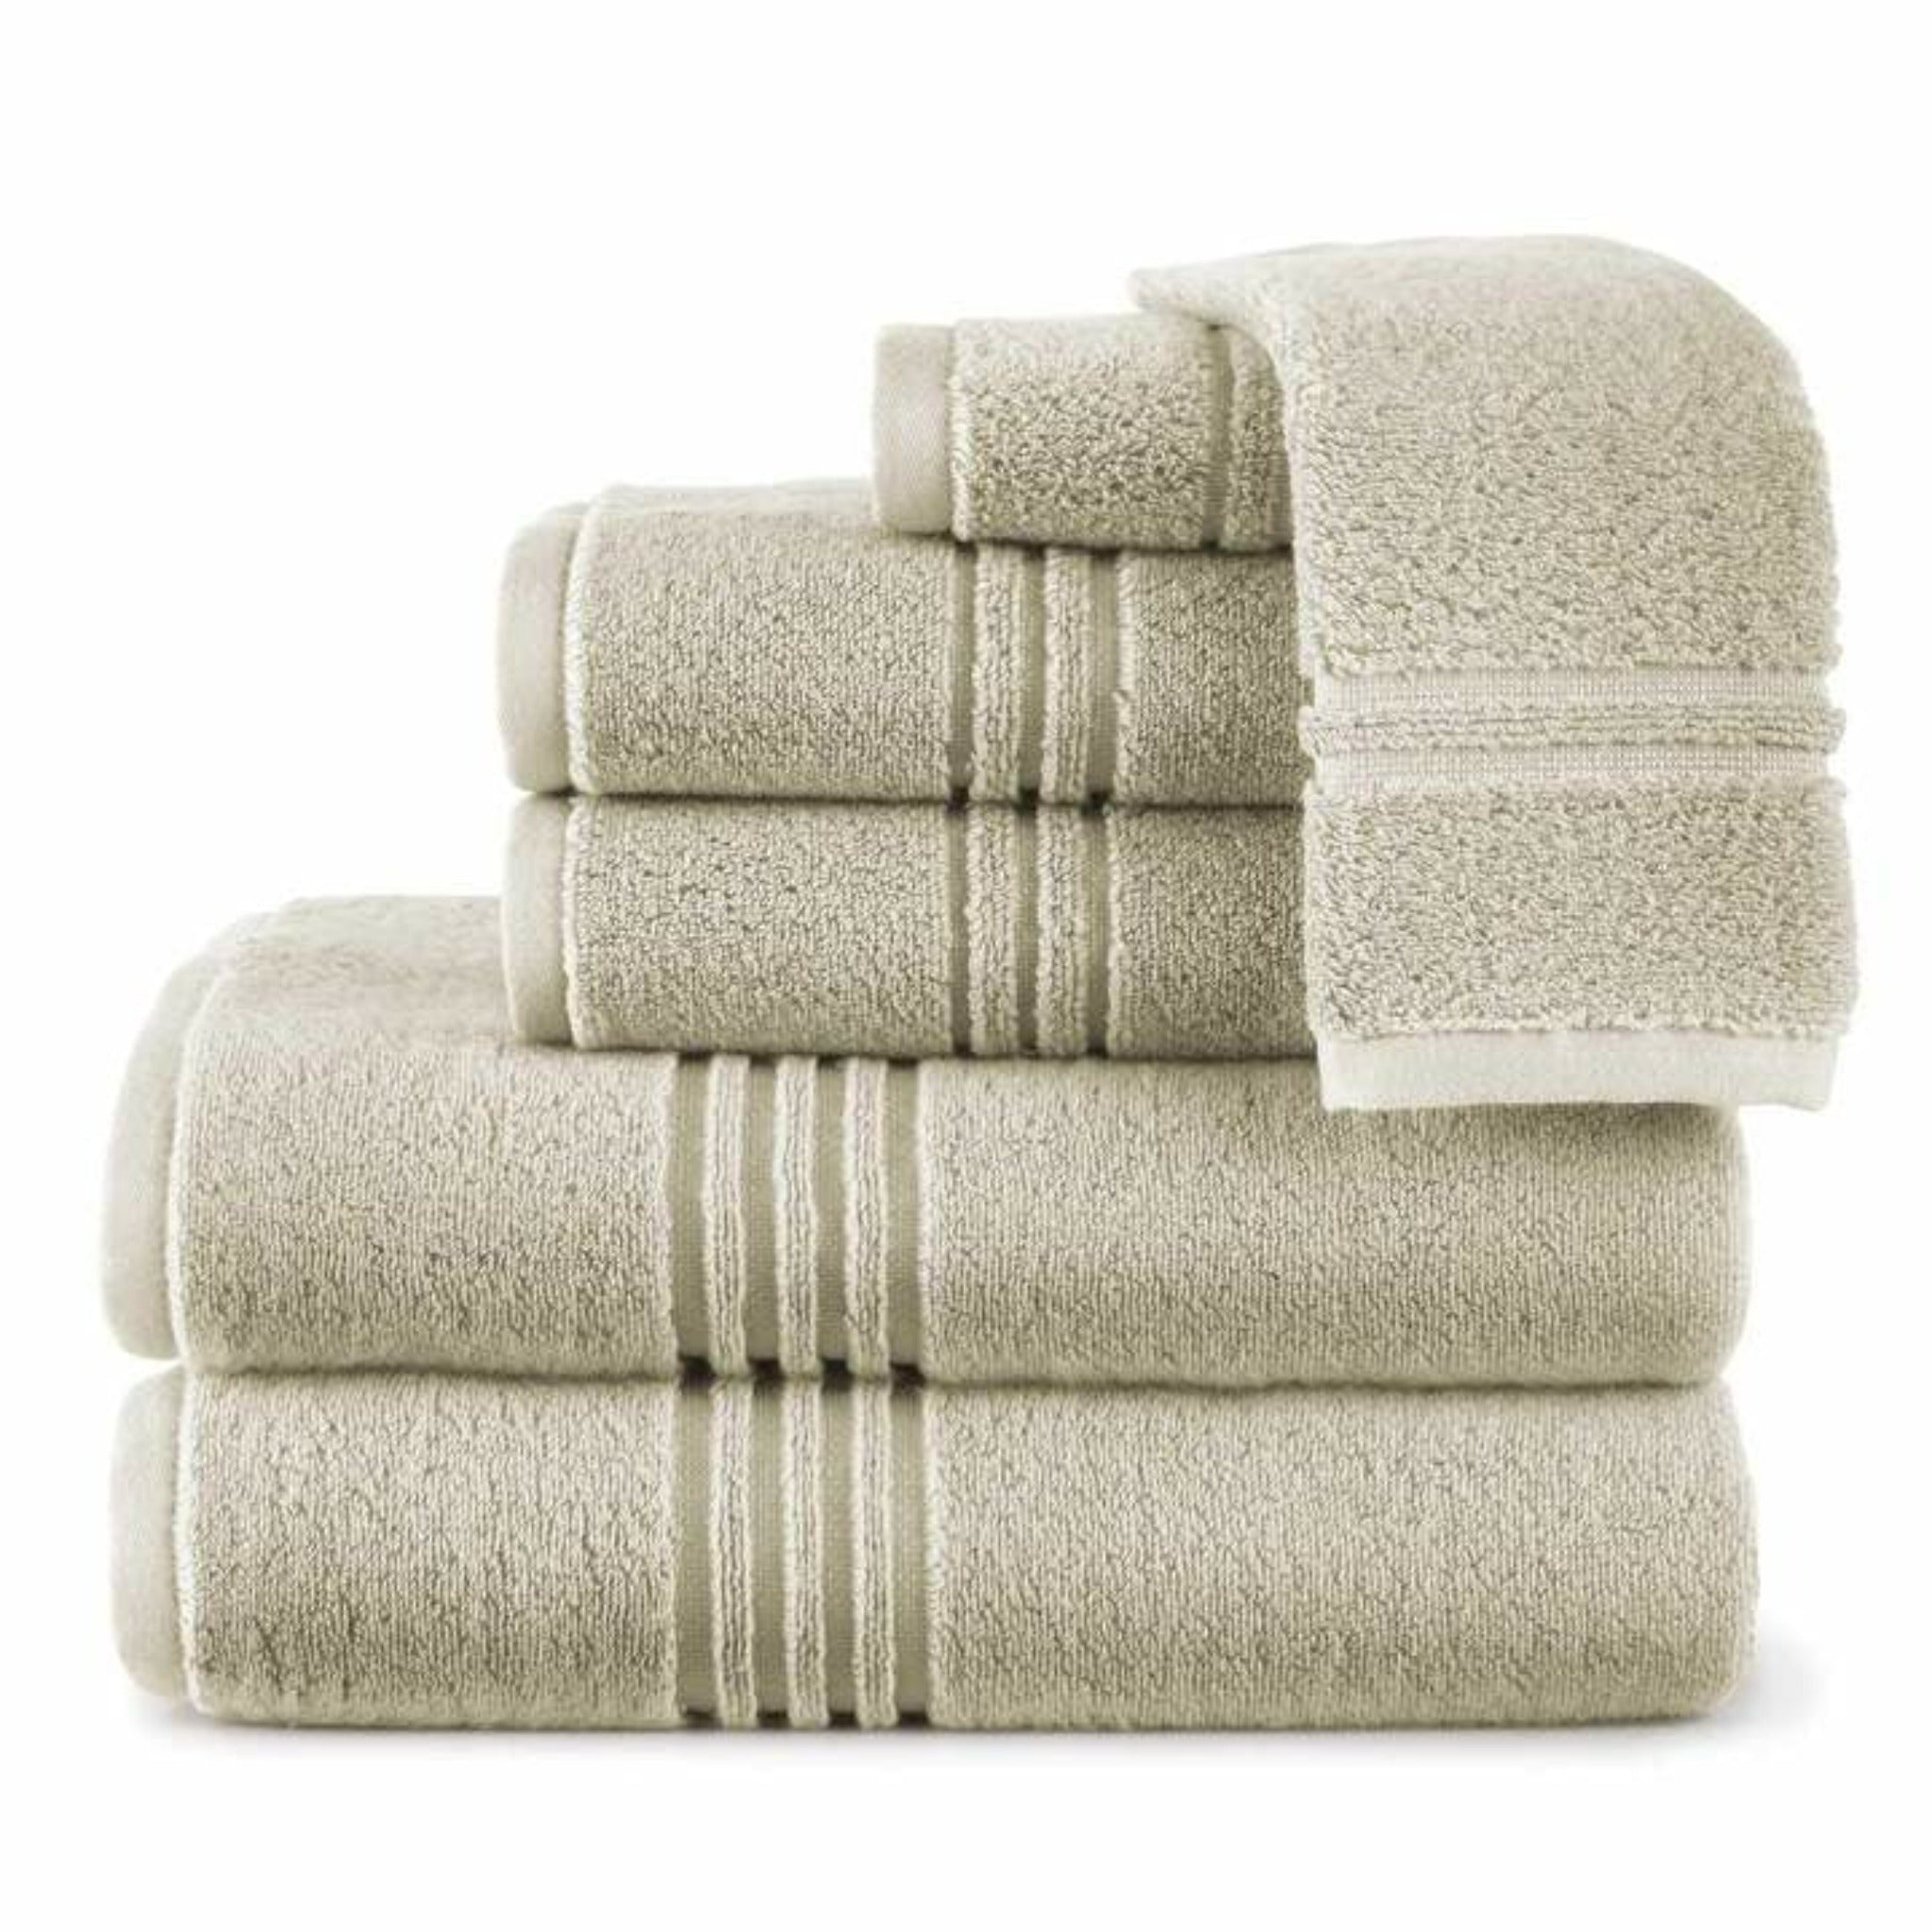 https://flandb.com/cdn/shop/products/Chelsea-Bath-Towel-Set-Linen_720x_60476a7d-5295-450f-b156-30e974fcb84a.jpg?v=1667469026